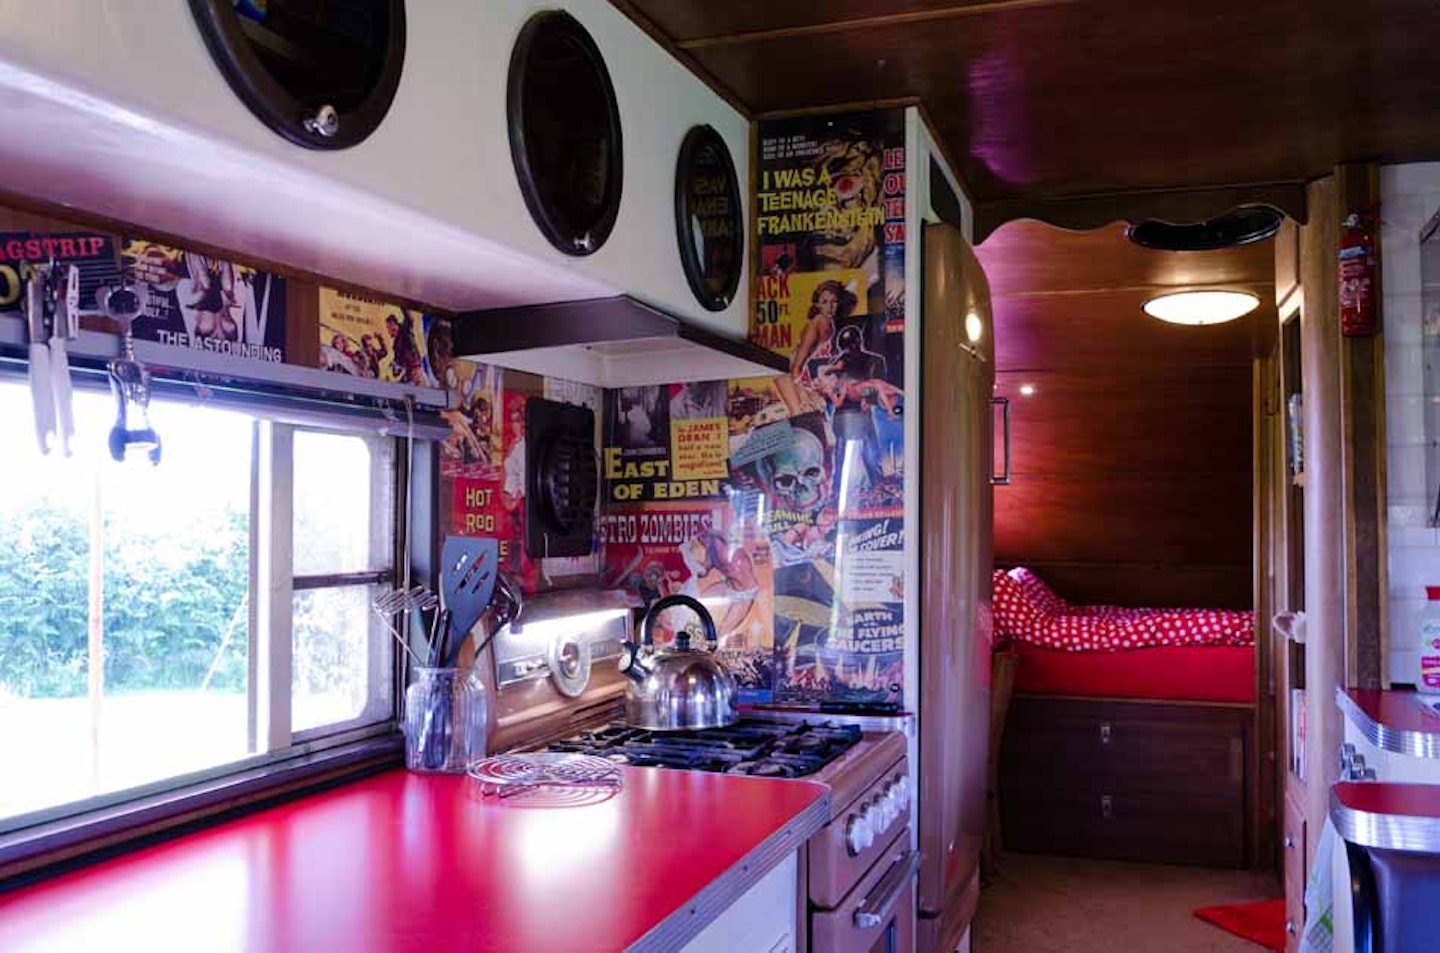 Inside the cosy vintage American caravan